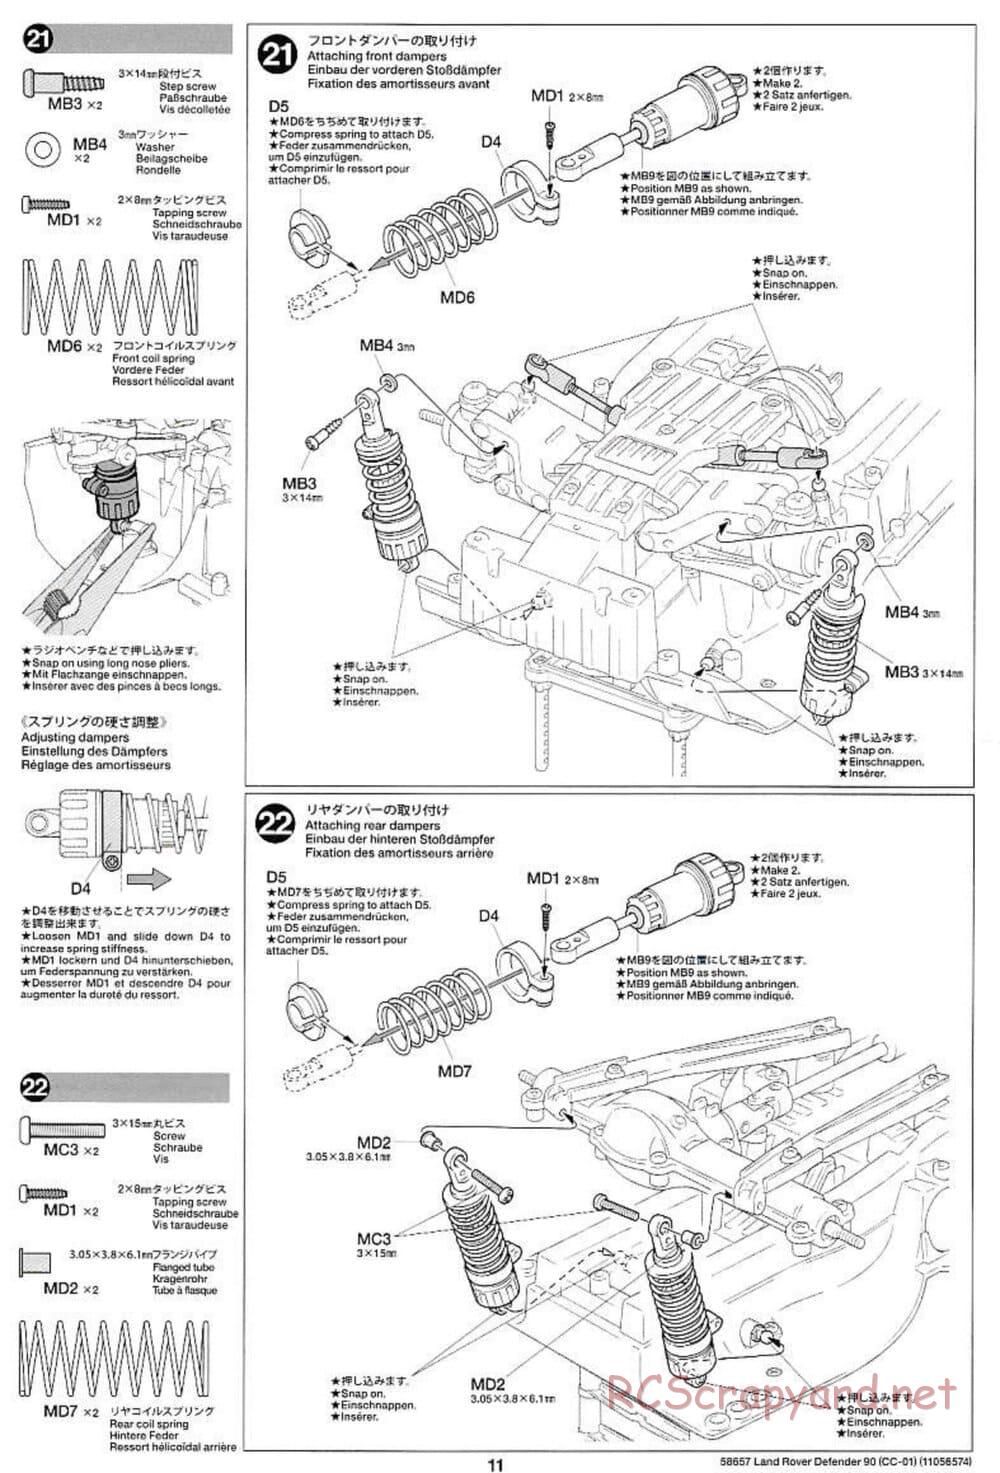 Tamiya - Land Rover Defender 90 - CC-01 Chassis - Manual - Page 11